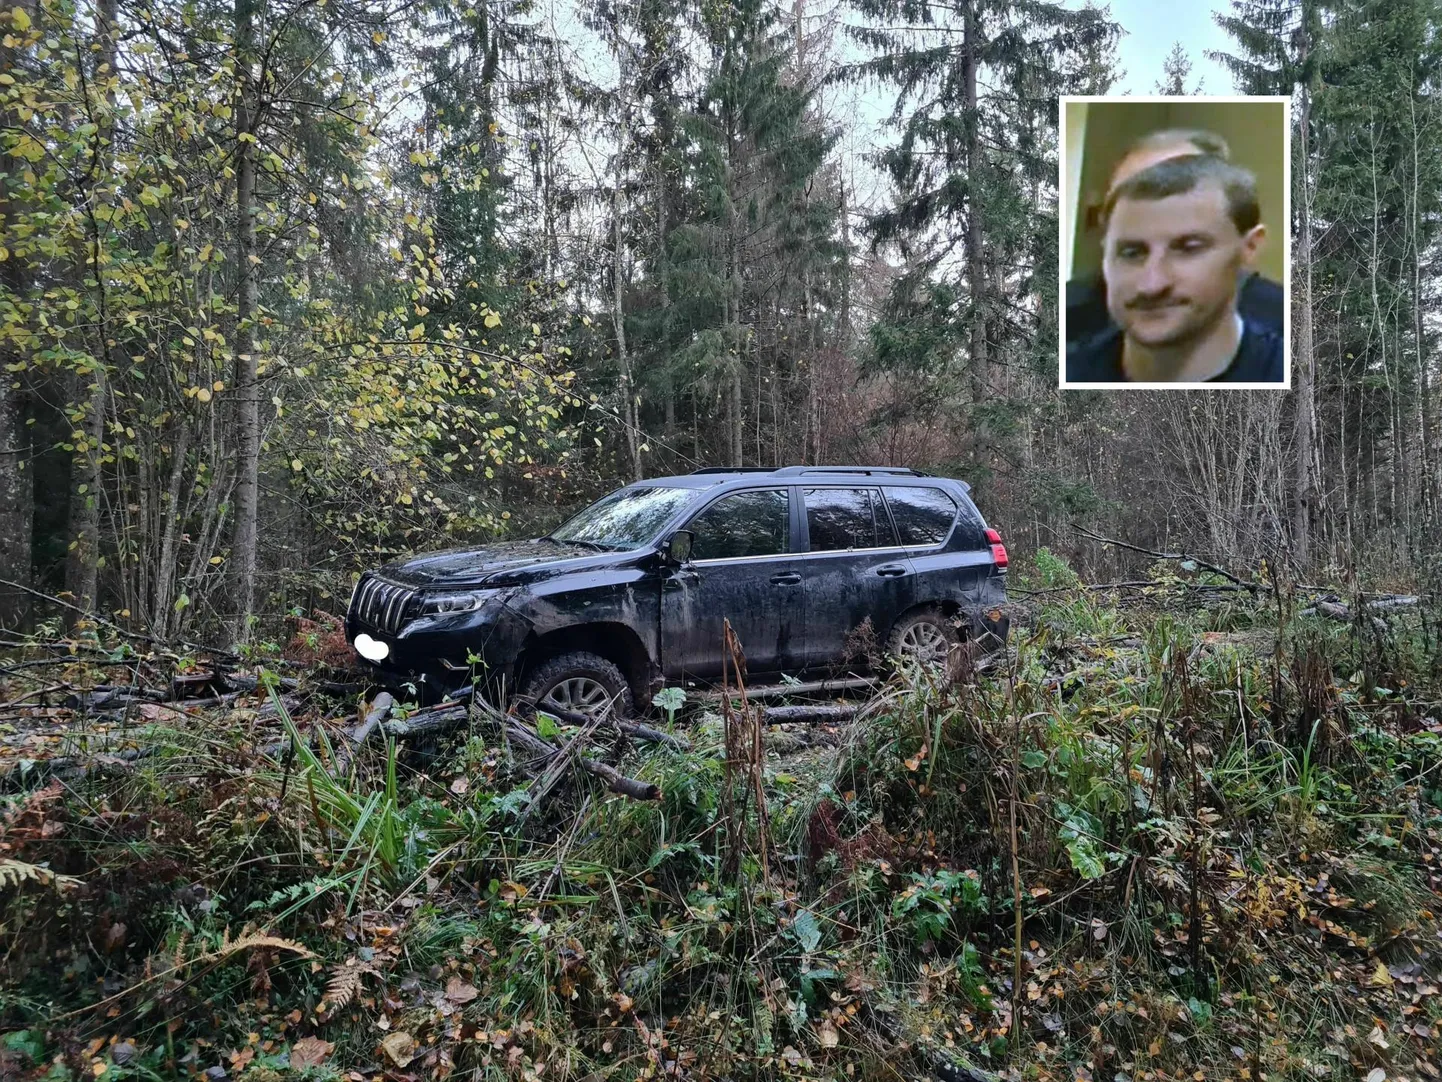 Mullu 19. oktoobril ärandas Leedust tulnud Nerijus Vaitiekus Viljandist auto, millel oli vargavastane GPS-süsteem. Politsei eest põgenedes jättis ta auto metsa ja ta tabati 16 tundi hiljem. Nüüd sai ta kohtus karistuse.